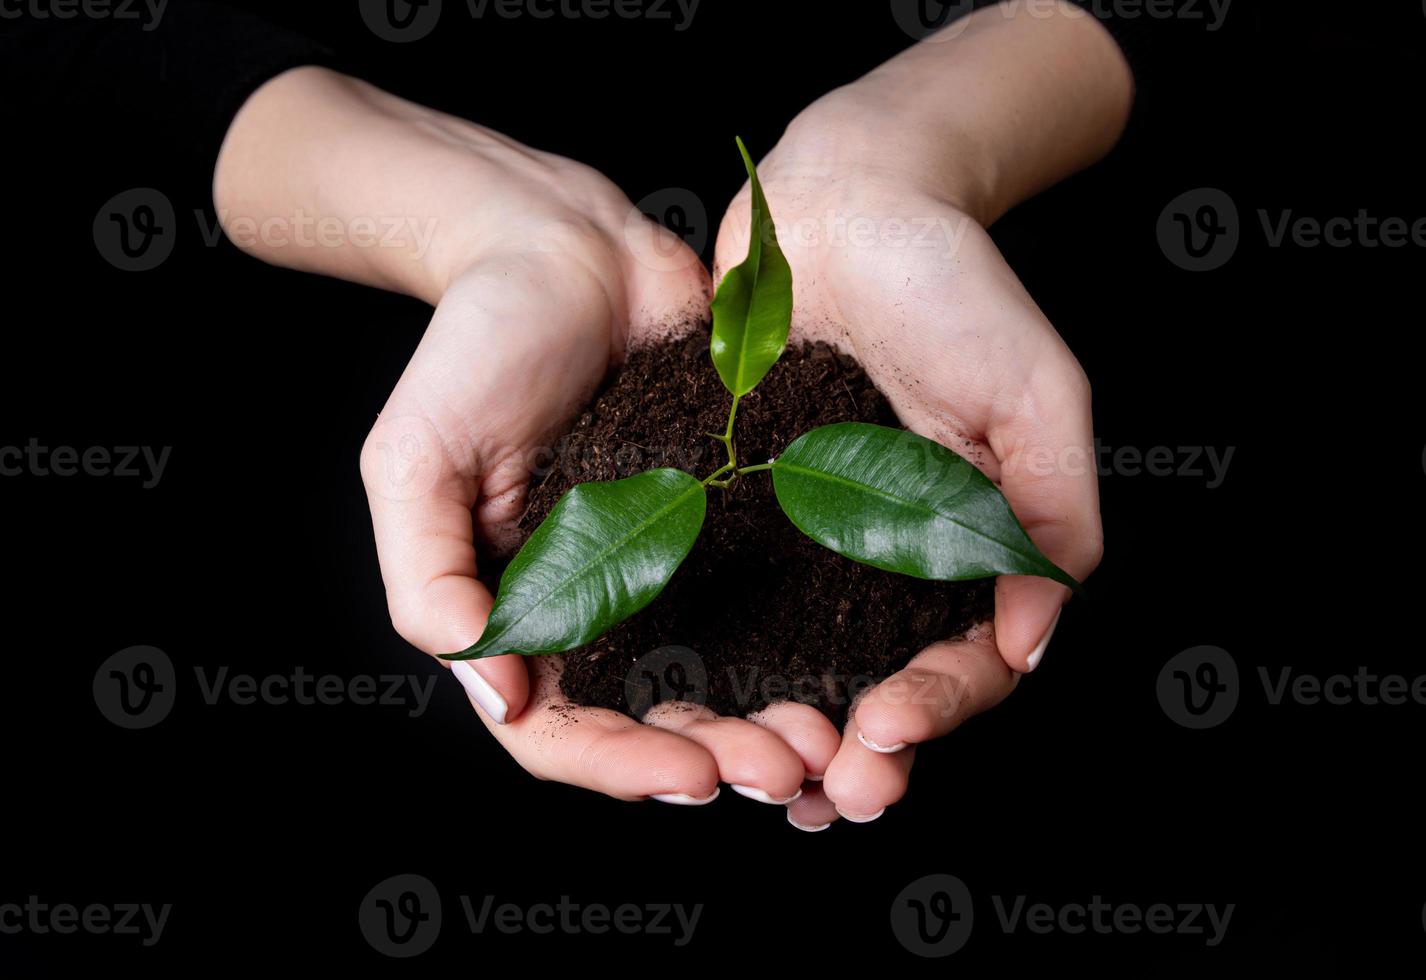 junger kleiner spross zum pflanzen in den boden in den händen, zwei hände halten für eine junge grüne pflanze, baum pflanzen, natur lieben, die welt retten, ökologie, umweltschutz foto